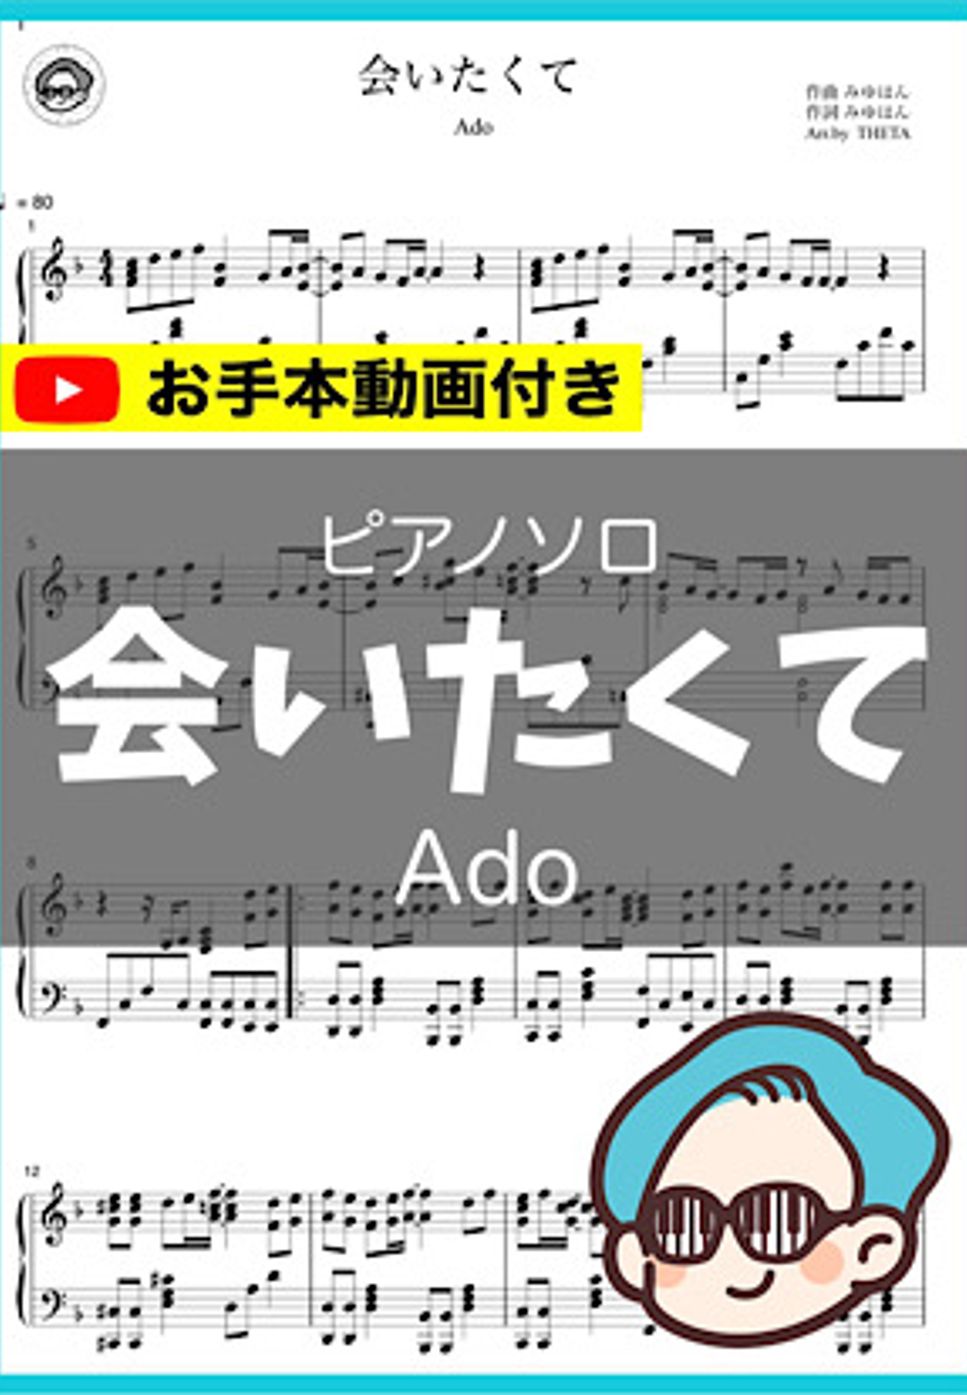 Ado - 会いたくて by シータピアノ